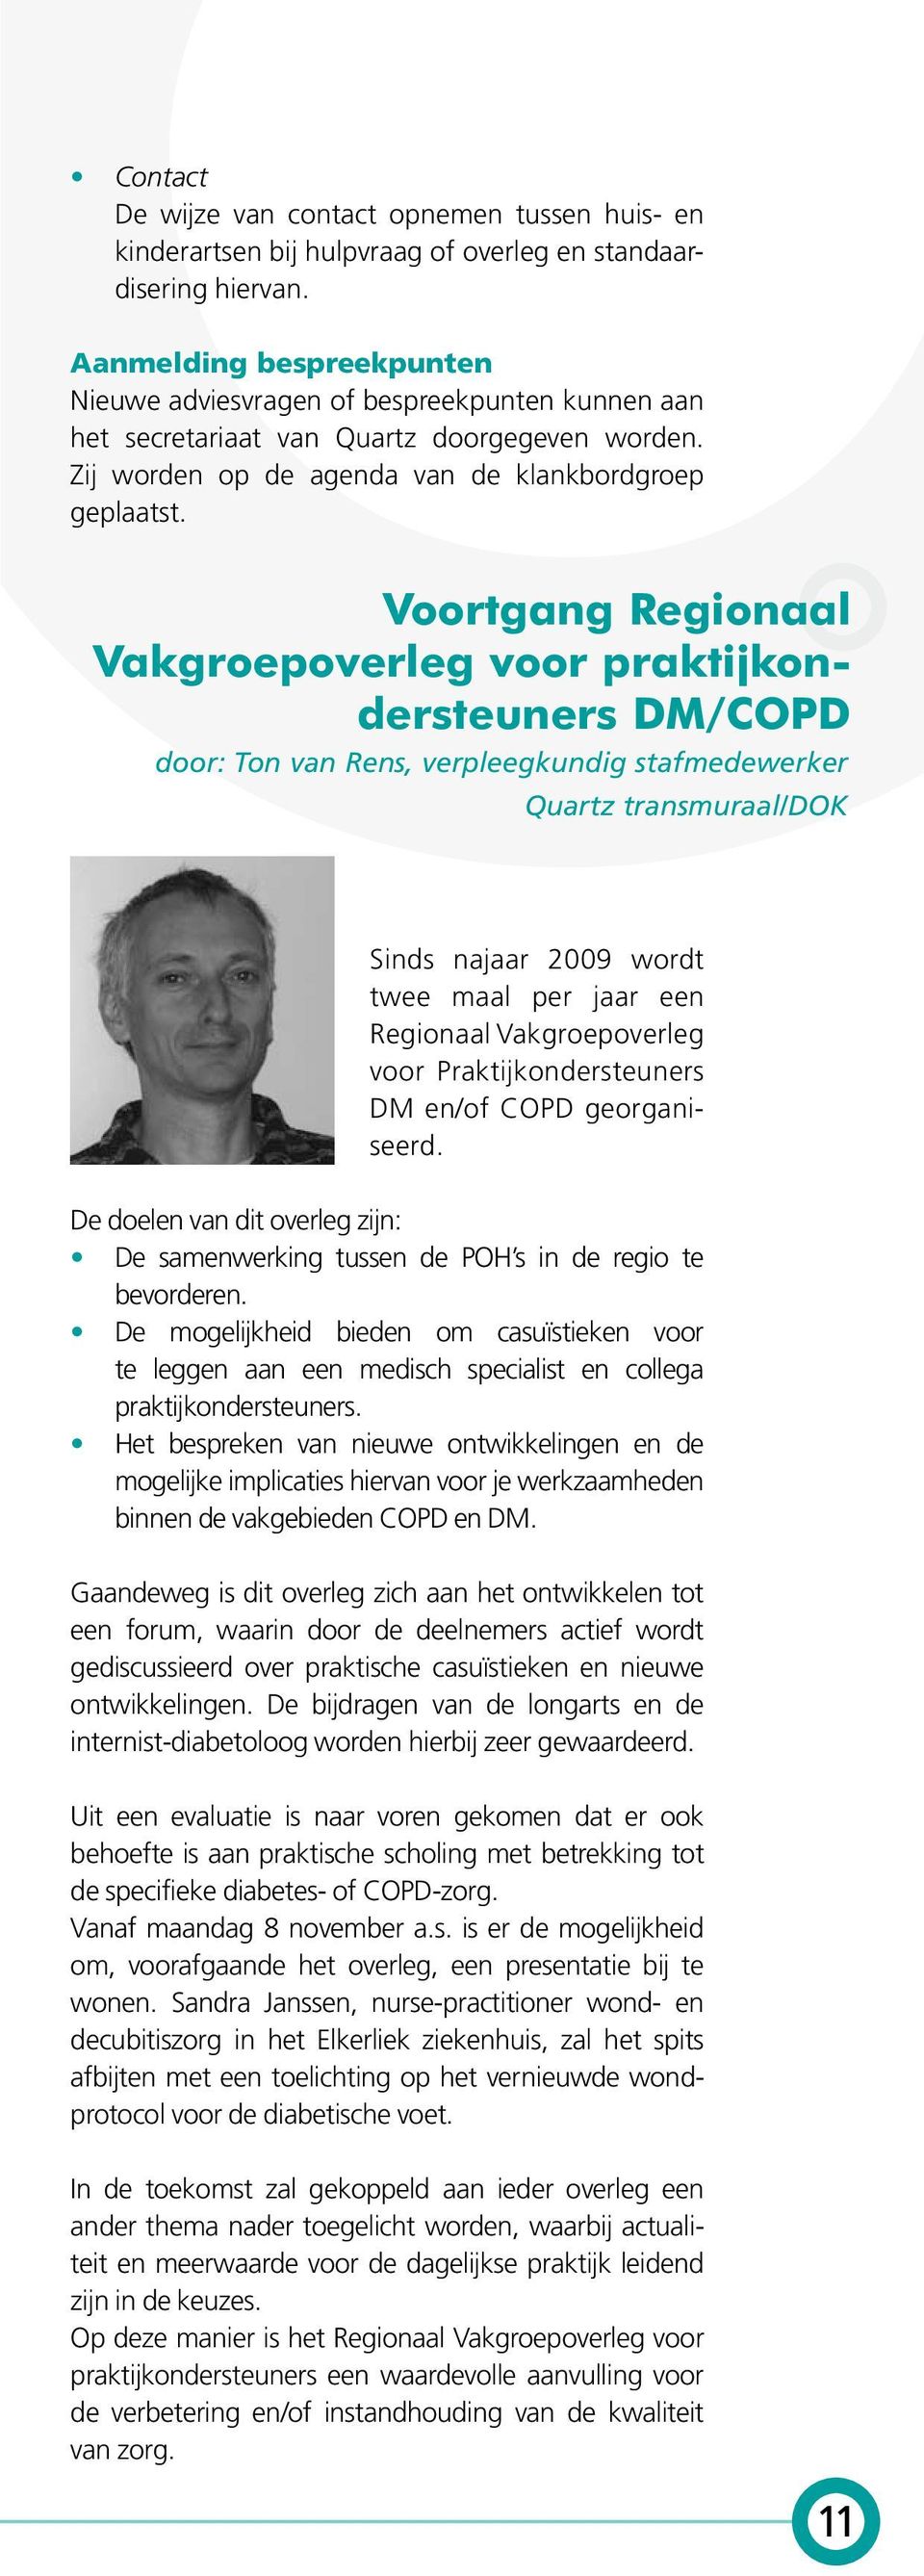 Voortgang Regionaal Vakgroepoverleg voor praktijkondersteuners DM/COPD door: Ton van Rens, verpleegkundig stafmedewerker Quartz transmuraal/dok Sinds najaar 2009 wordt twee maal per jaar een